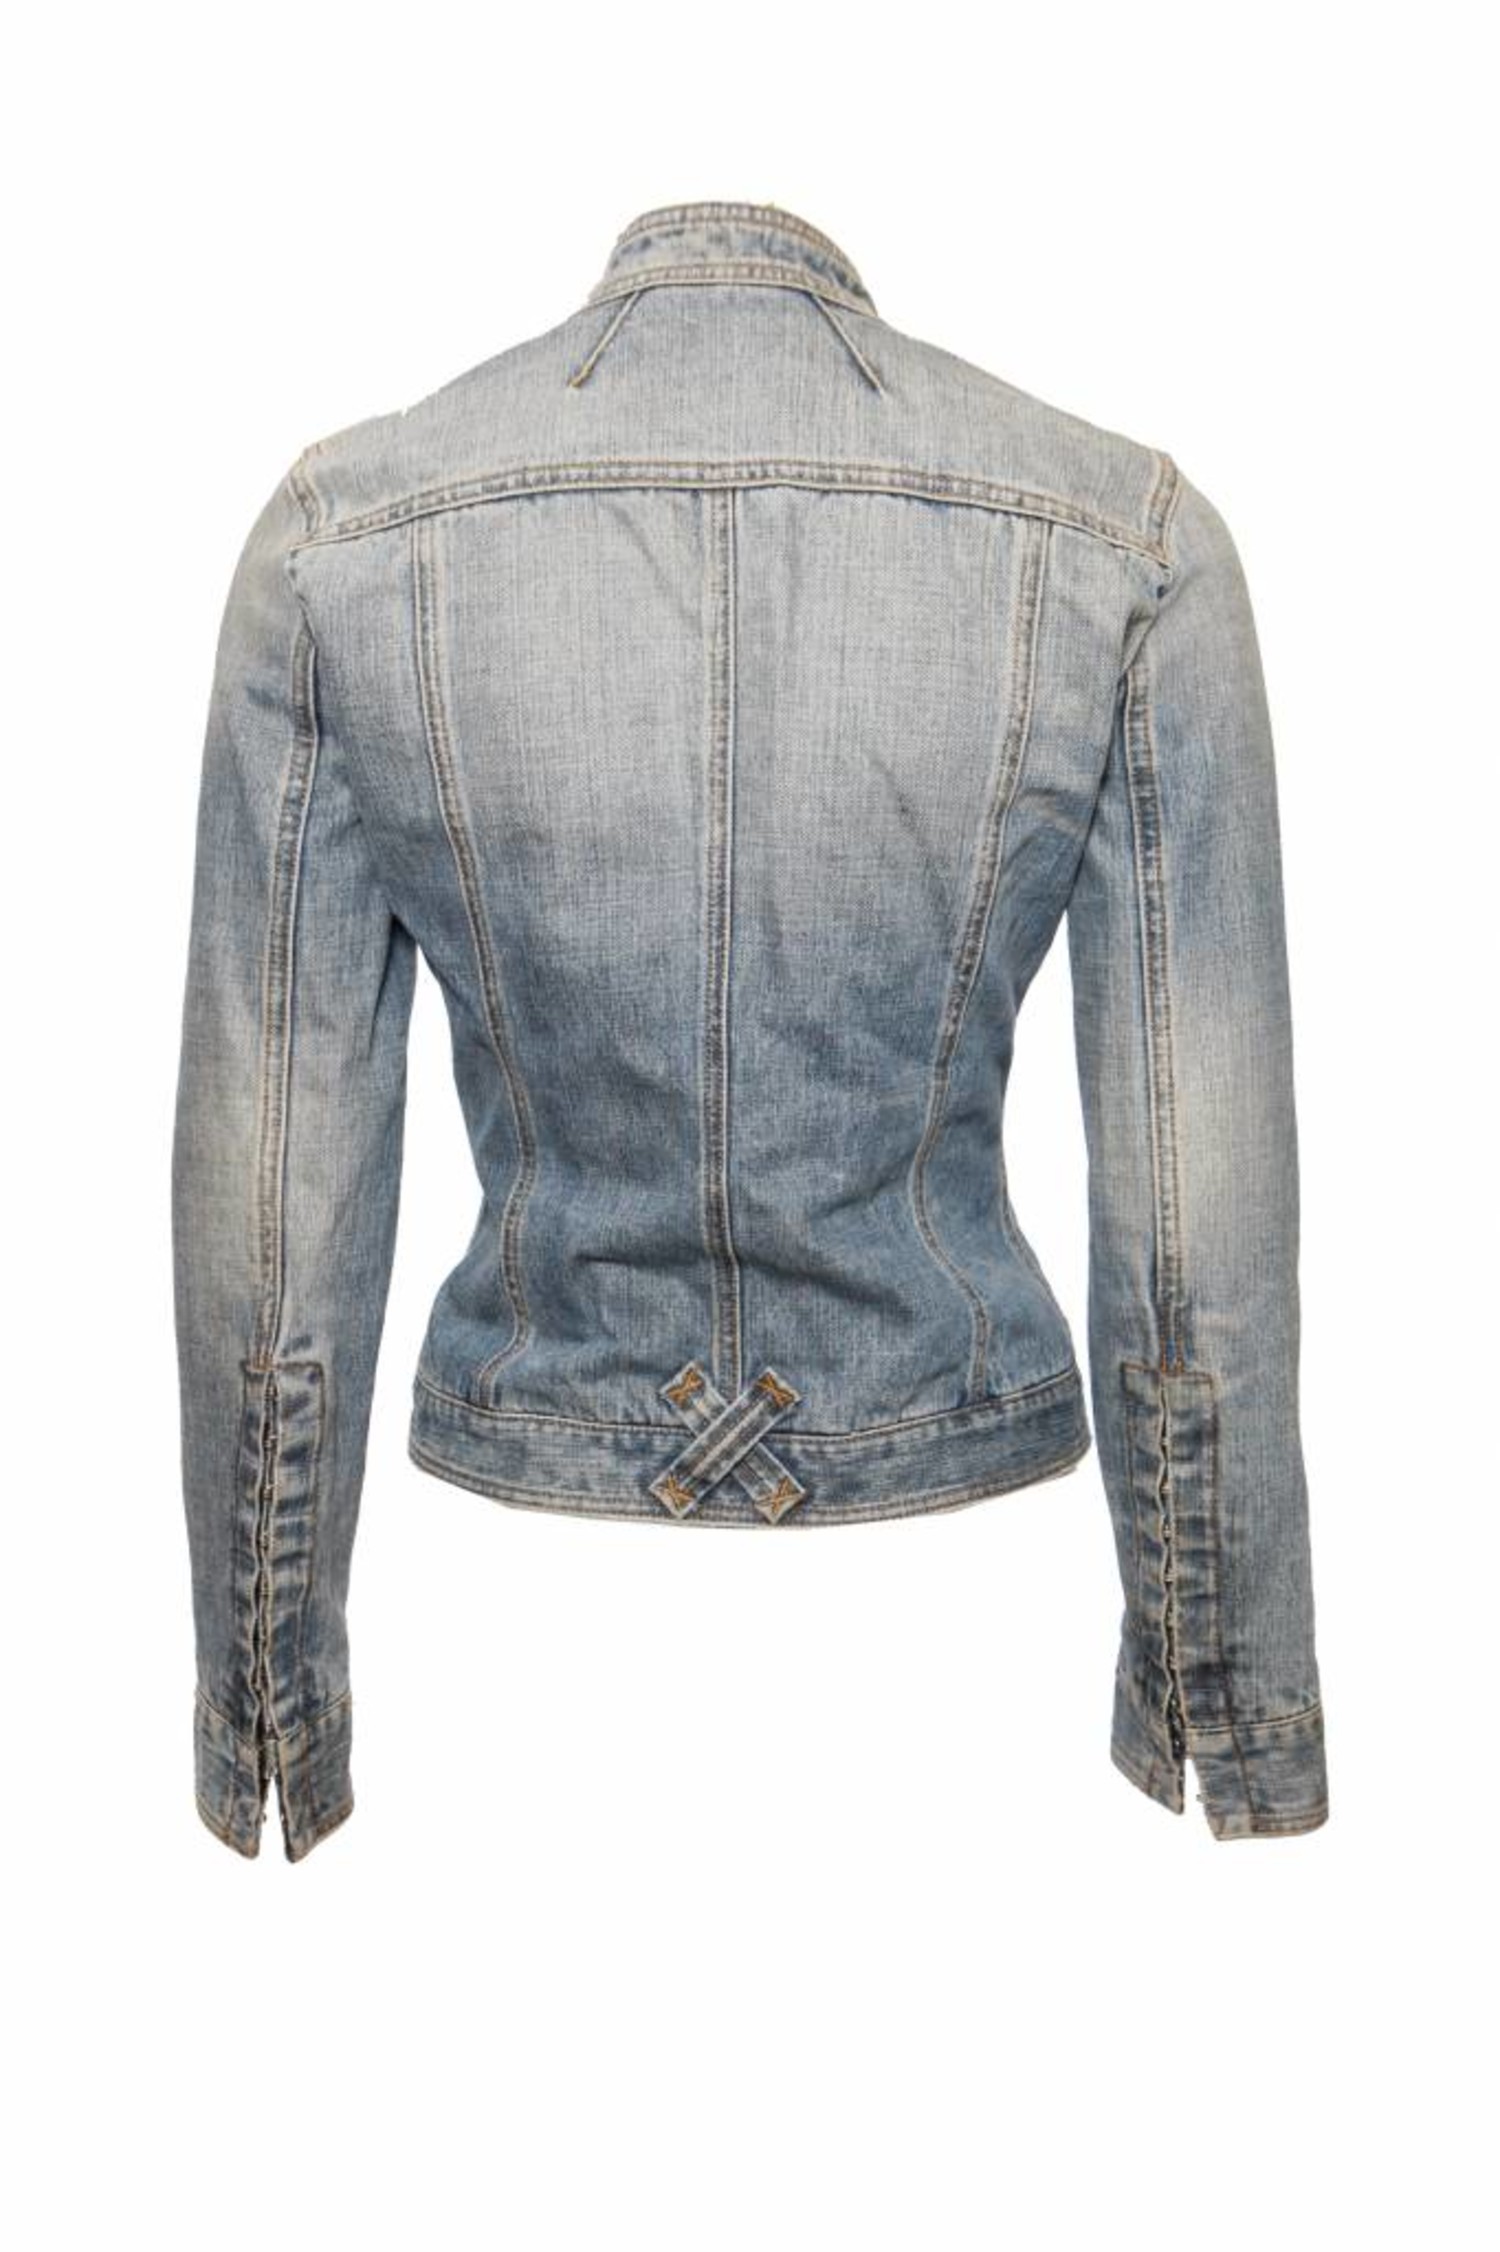 consensus D.w.z verzameling Dolce & Gabbana, licht blauw jeans jasje - Unique Designer Pieces